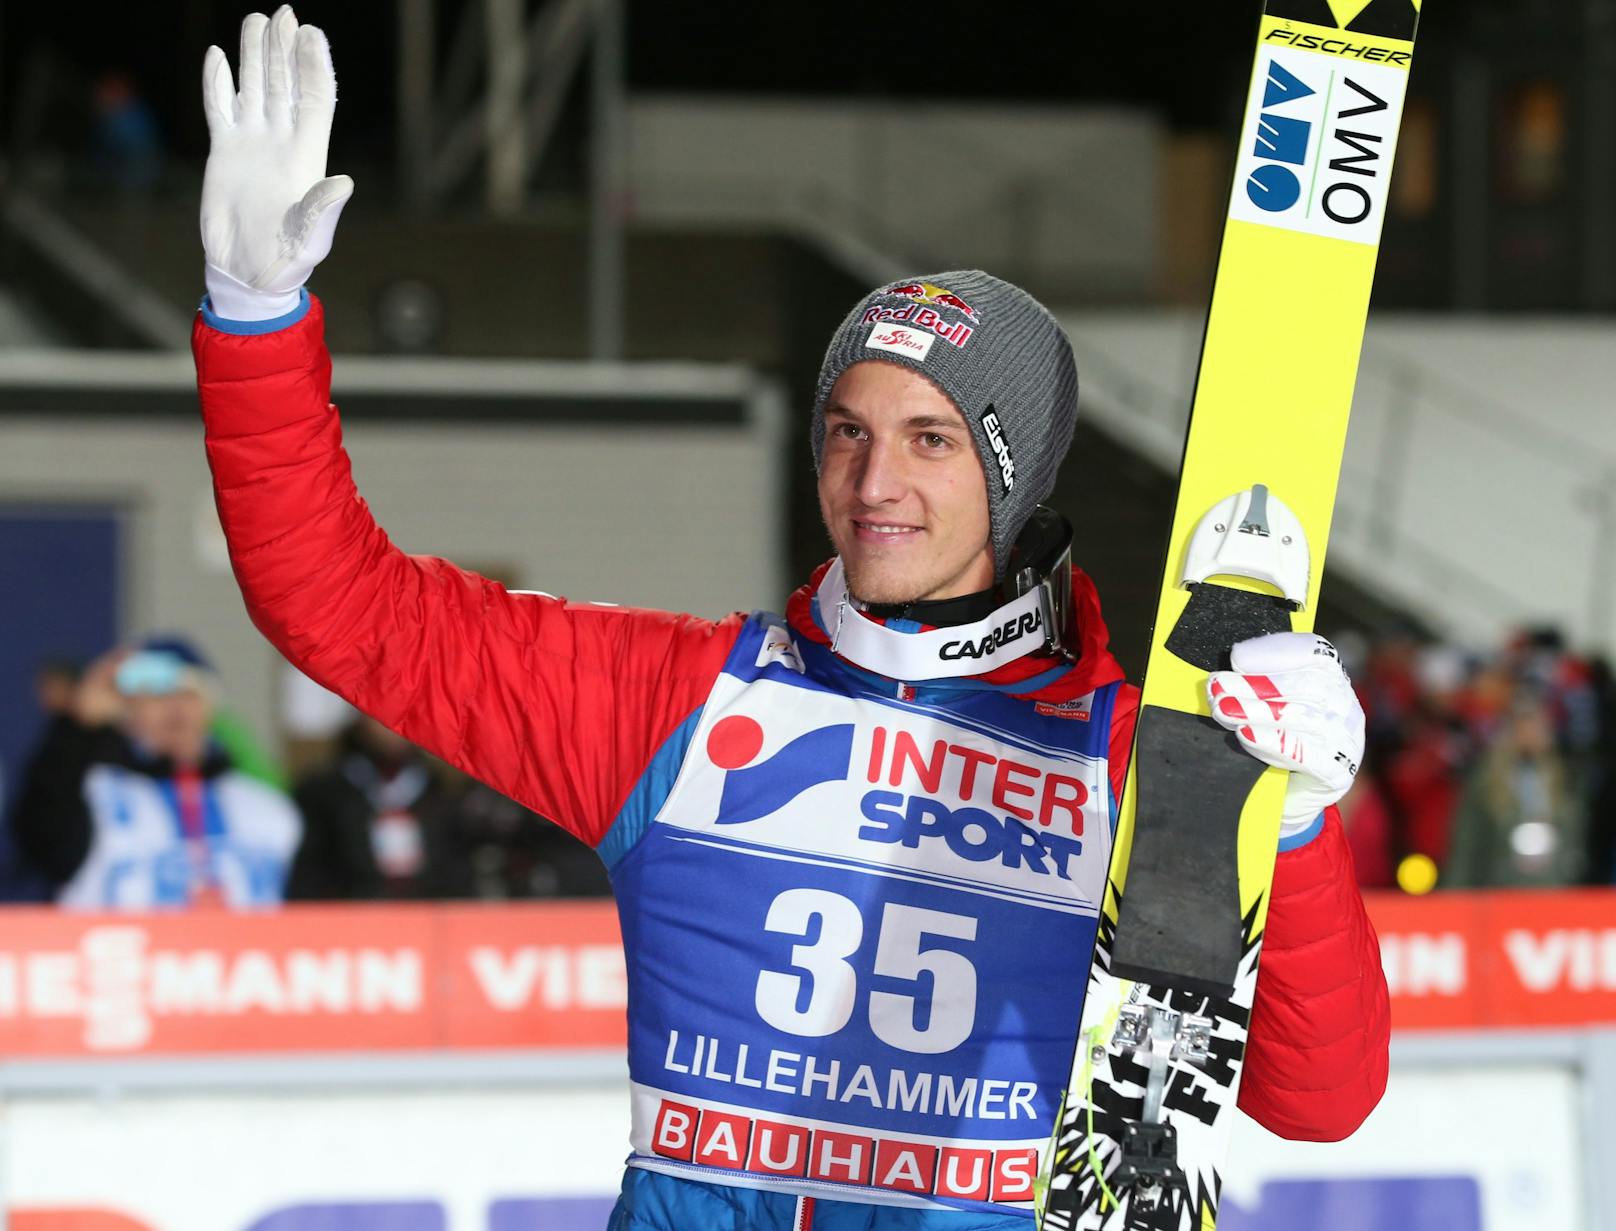 Das Lächeln über den Sieg in Lillehammer. Dort, wo er einst sein erstes Weltcupspringen gewann, schließt sich acht Jahre später der Kreis. In der Saison 2013/14 beginnt seine einstige Dominanz zu schwinden.